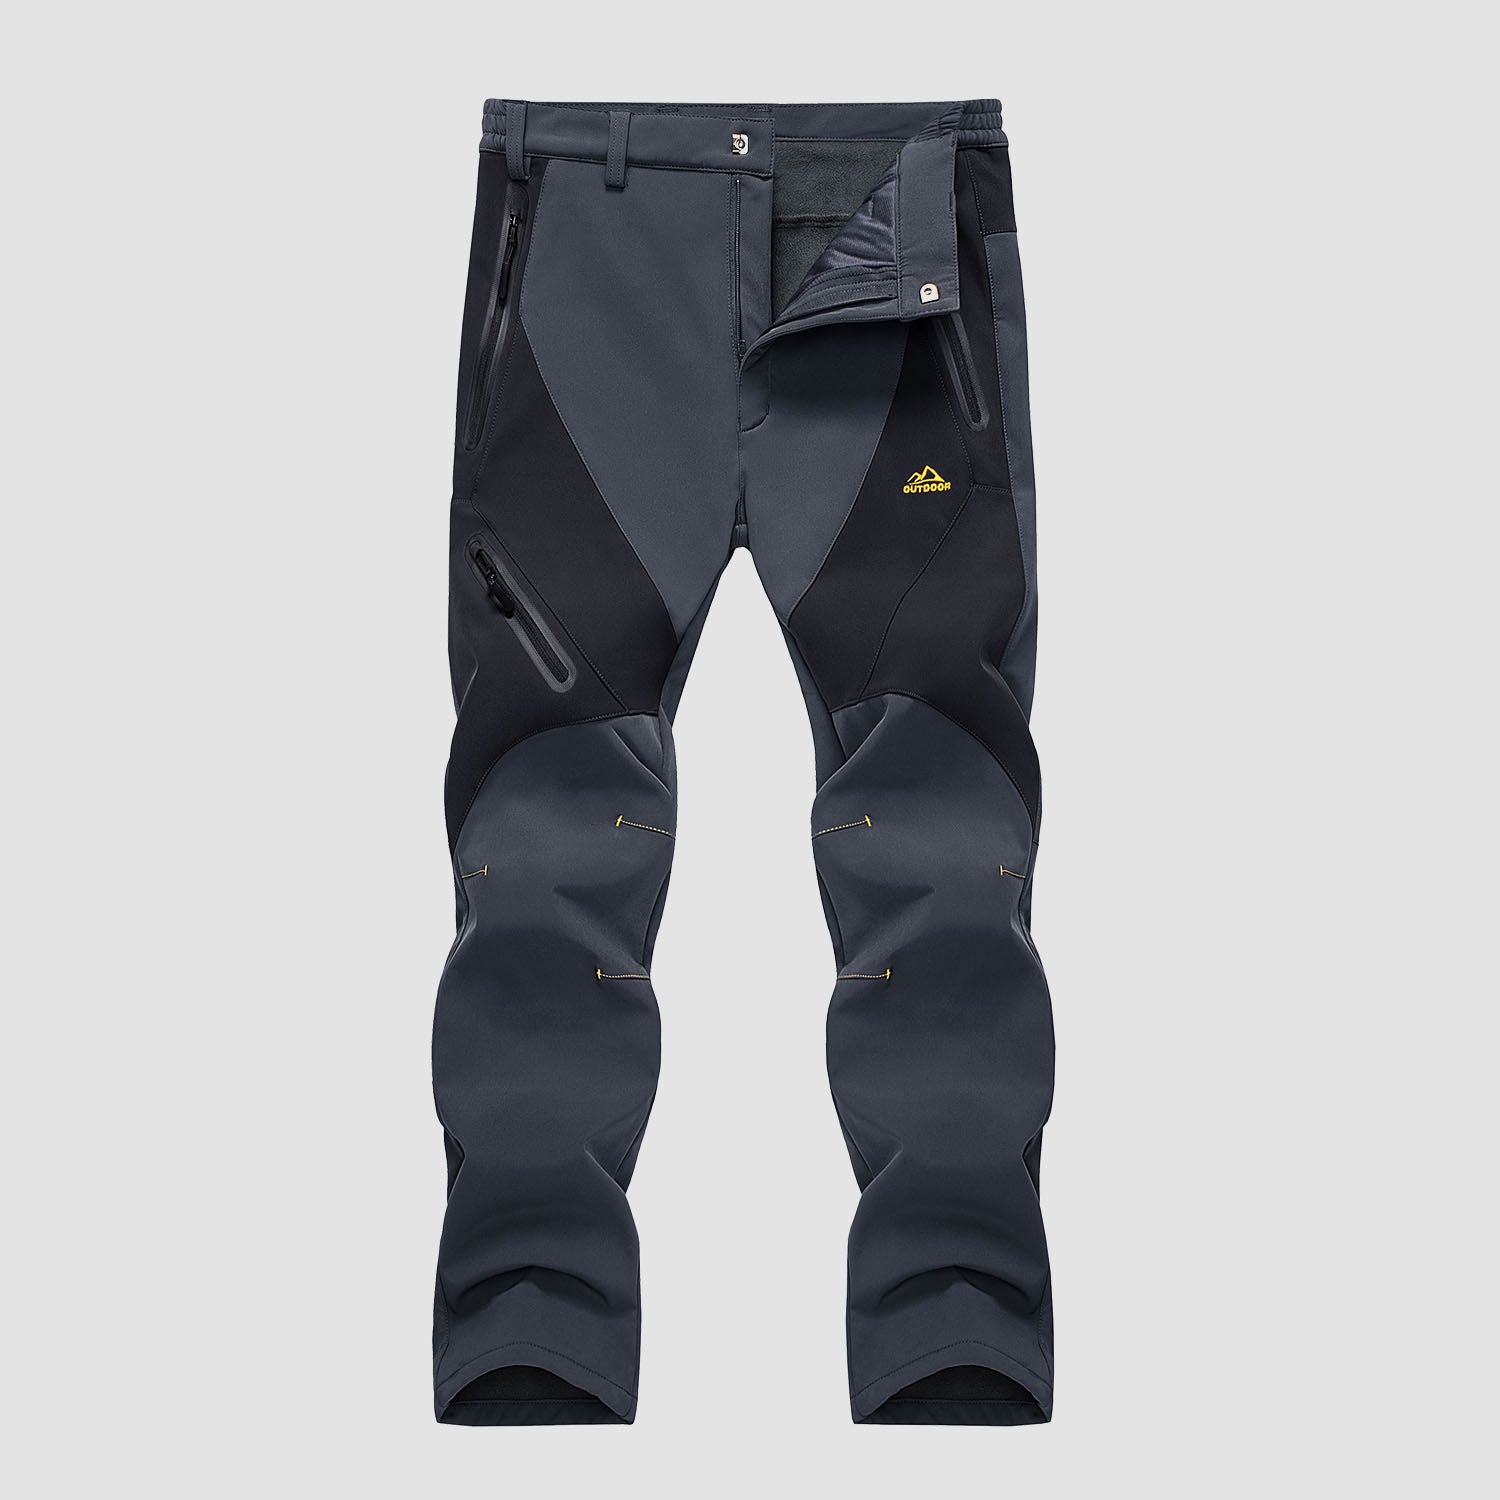 Men's Winter Pants Snow Pants Fleece Lined Water Resistant with 4